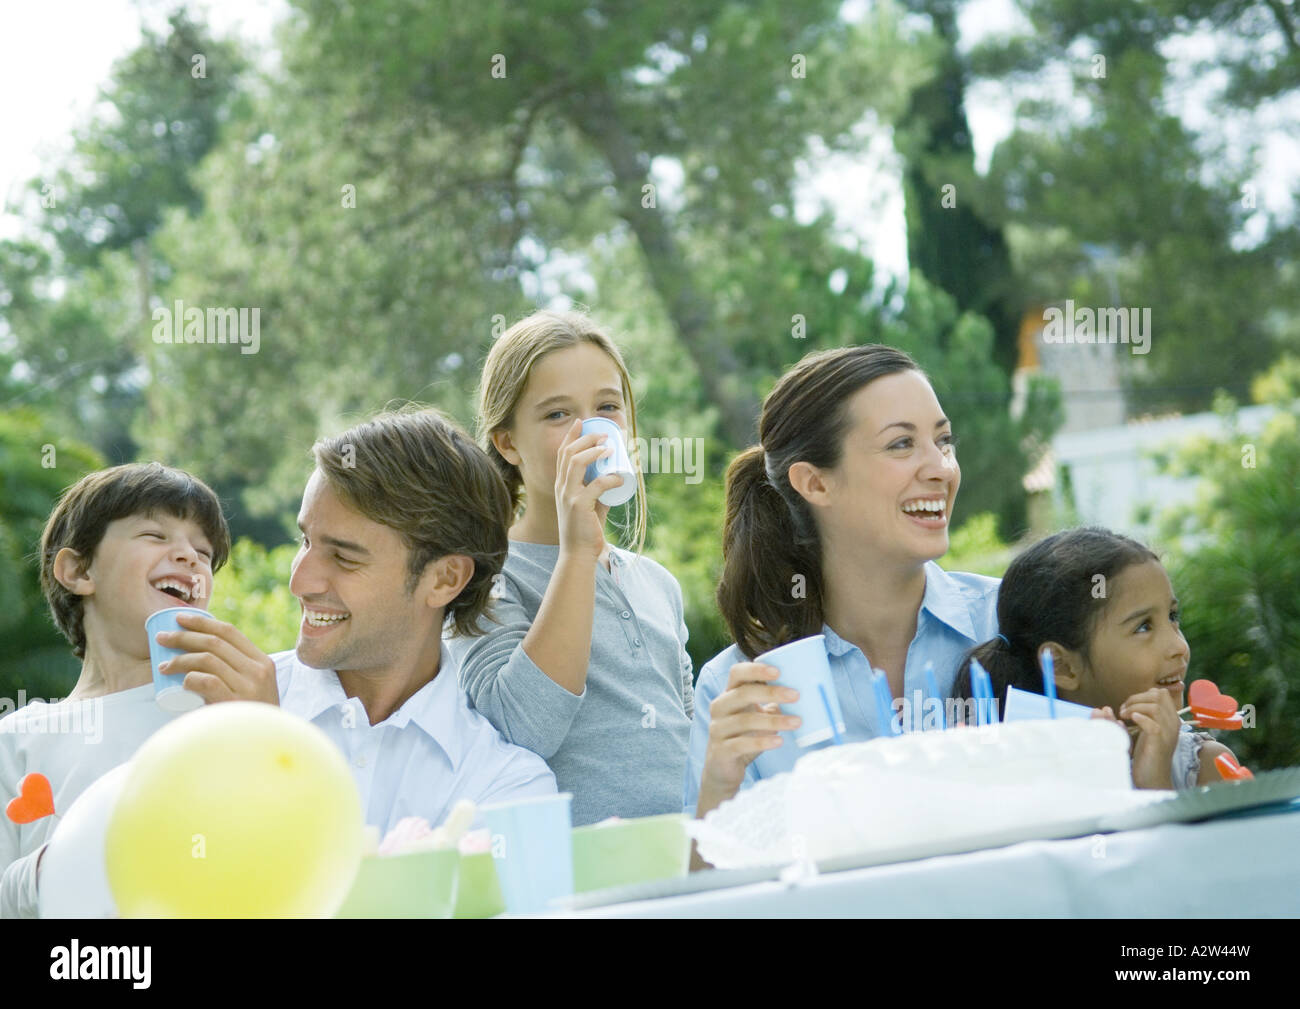 Family having outdoor birthday party Stock Photo